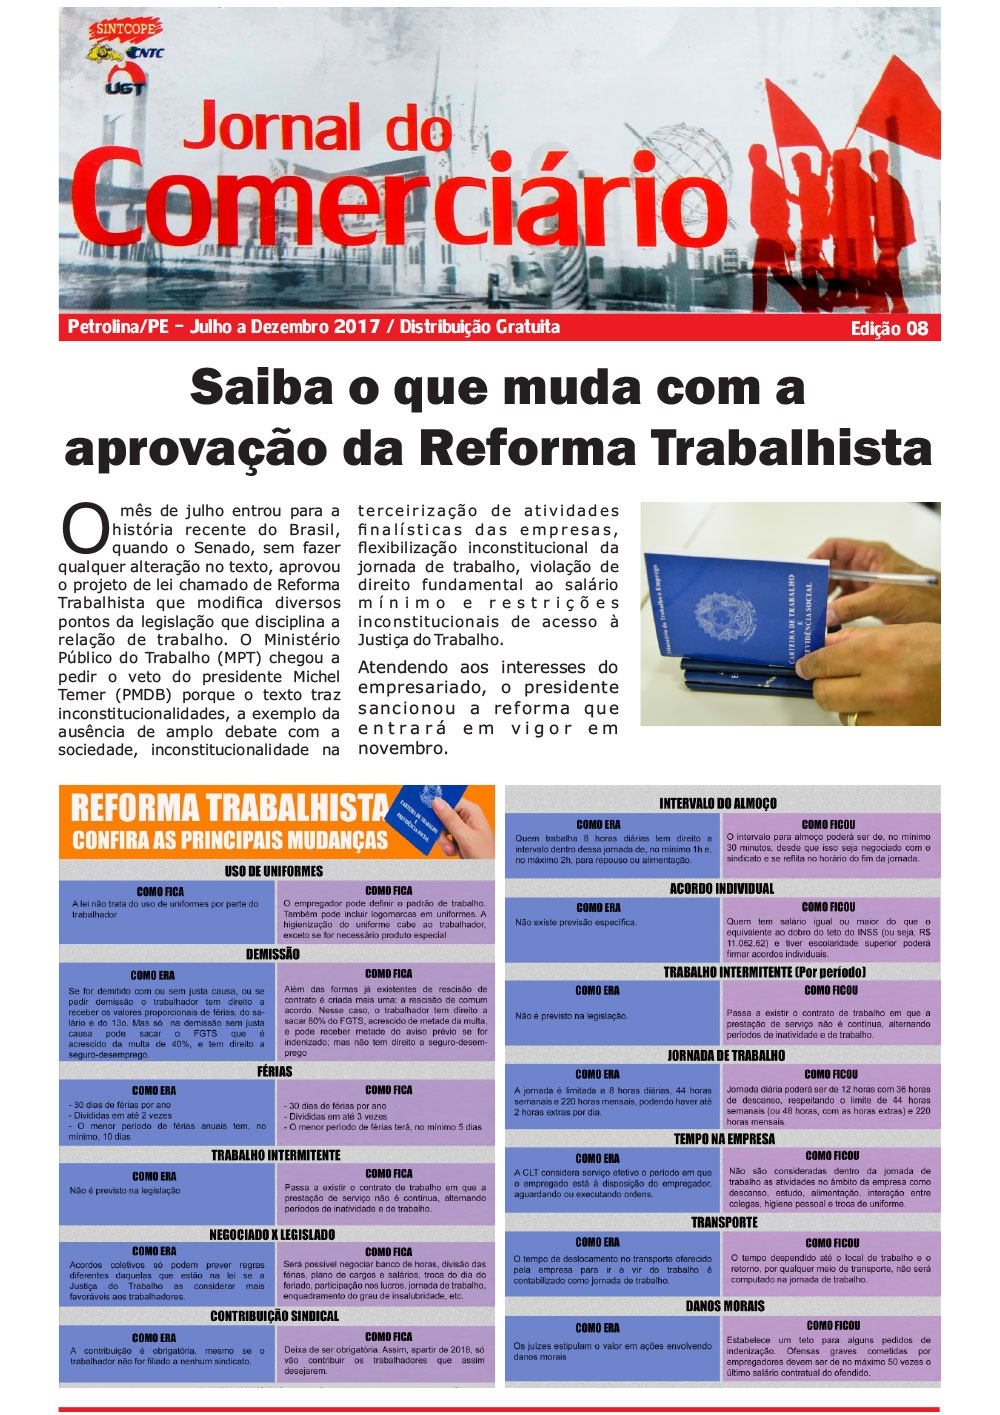 Foto do jornal Sintcope Jornal do Comerciário - Edição no. 08